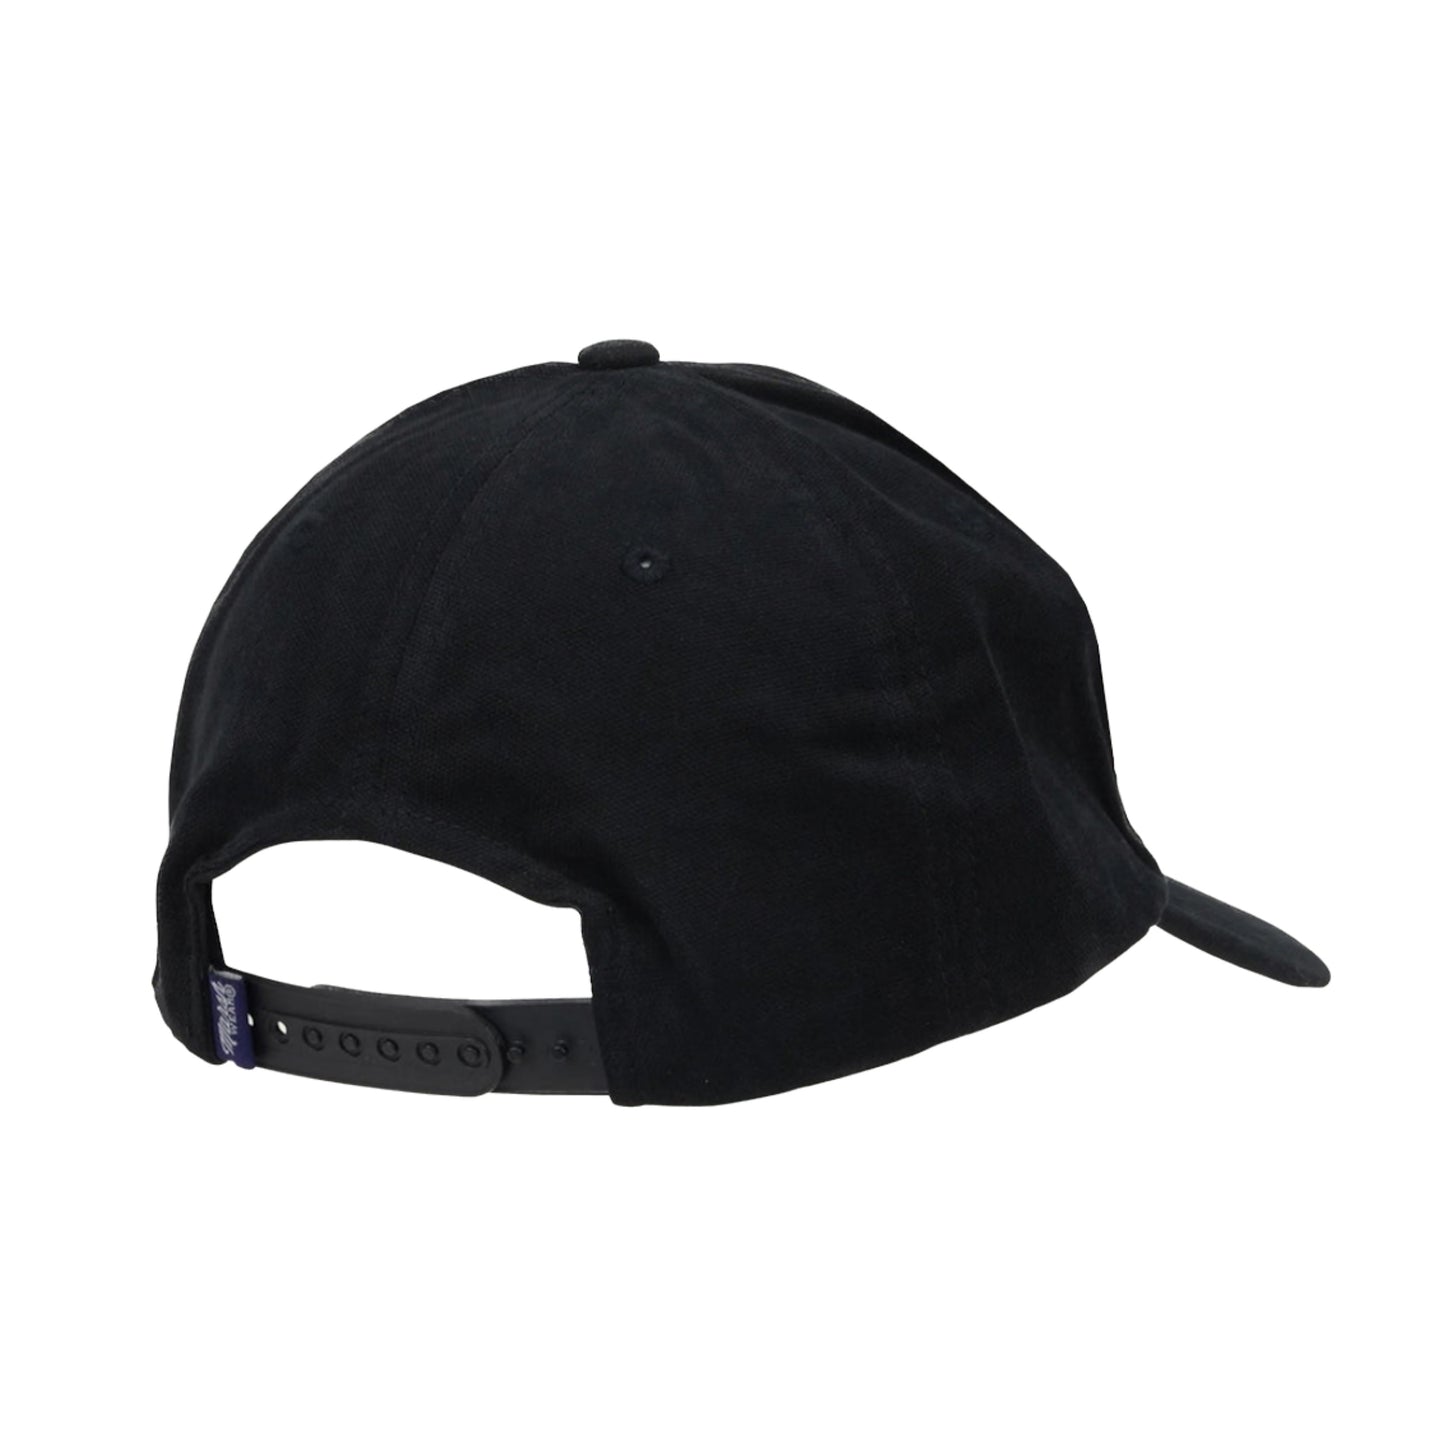 Marsh Wear Alton Hat